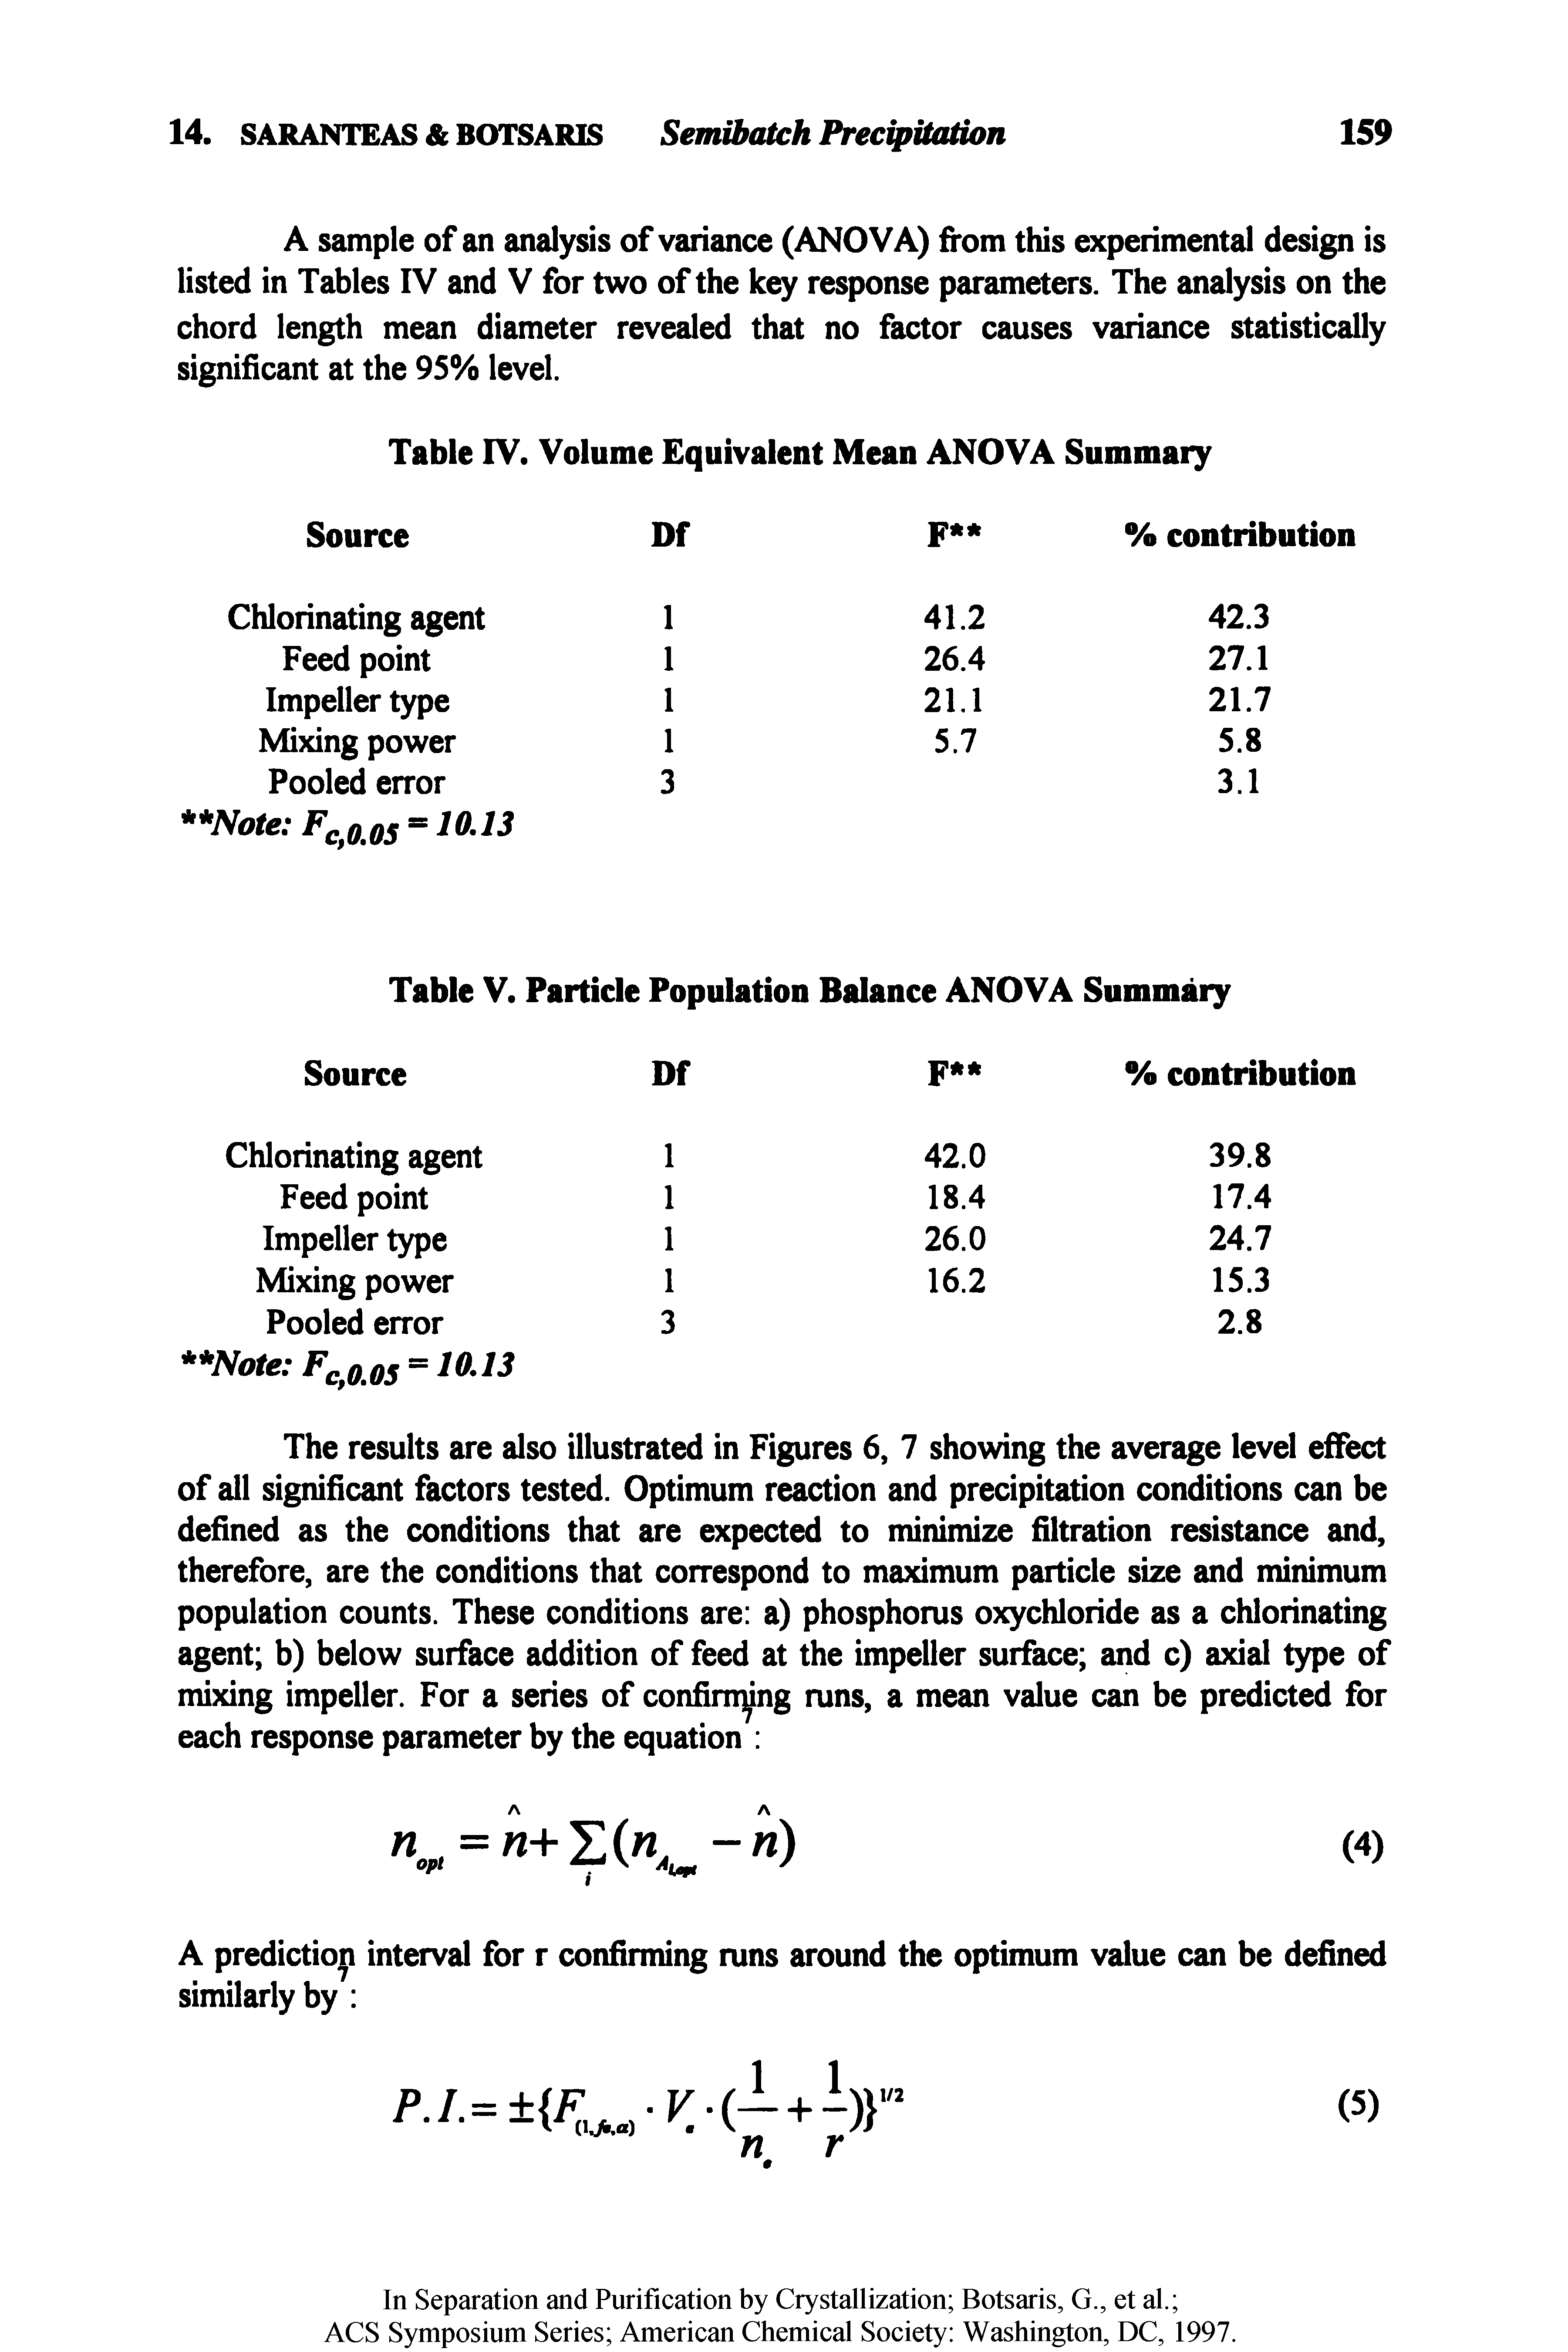 Table V. Particle Population Balance ANOVA Summary...